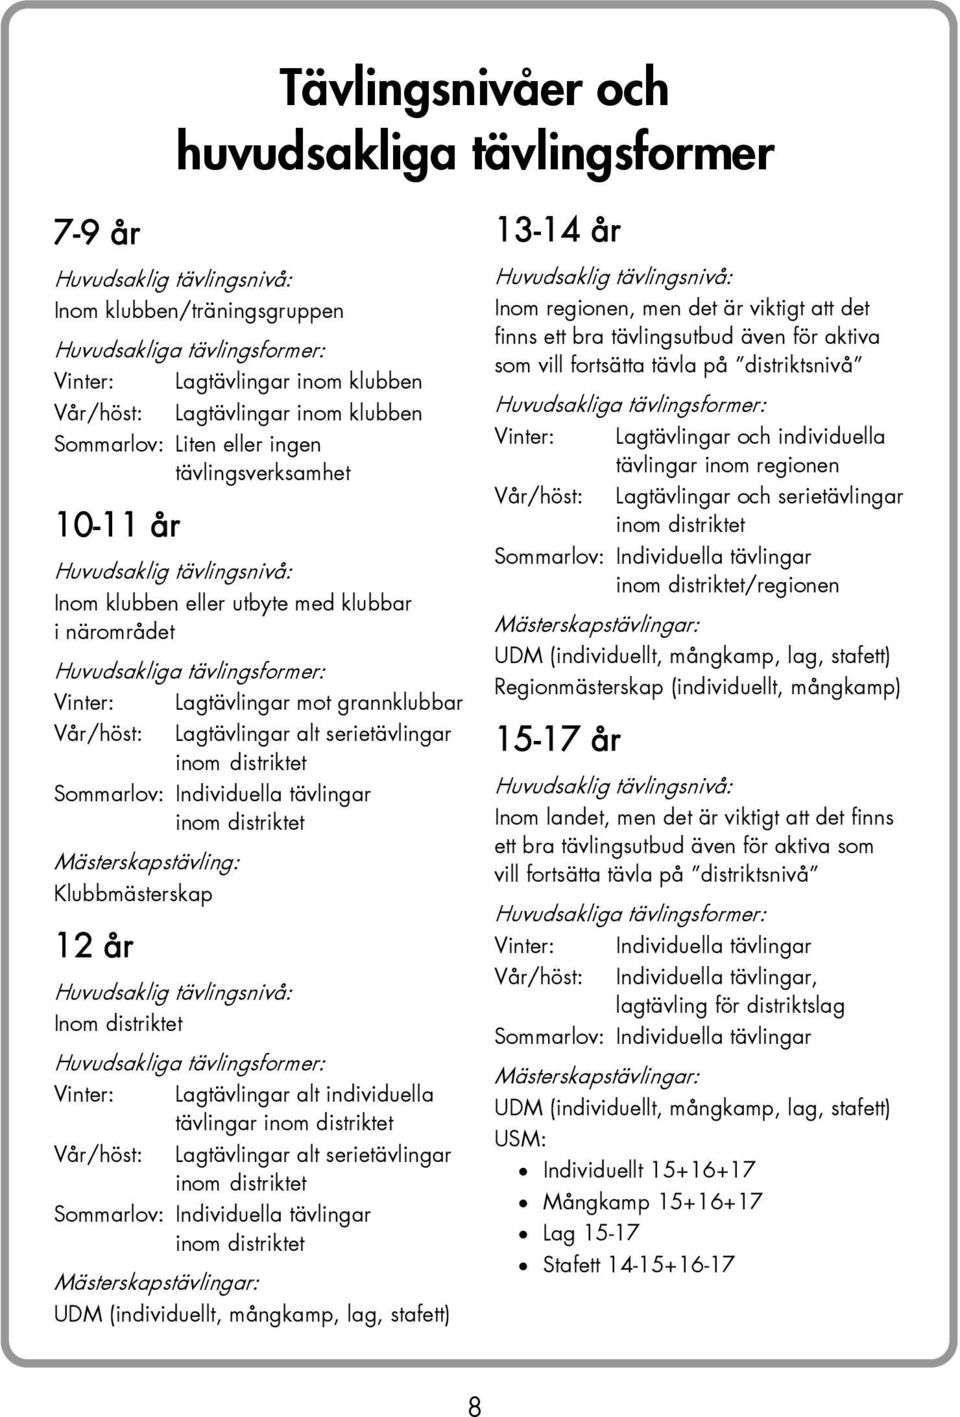 grannklubbar Vår/höst: Lagtävlingar alt serietävlingar inom distriktet Sommarlov: Individuella tävlingar inom distriktet Mästerskapstävling: Klubbmästerskap 12 år Huvudsaklig tävlingsnivå: Inom